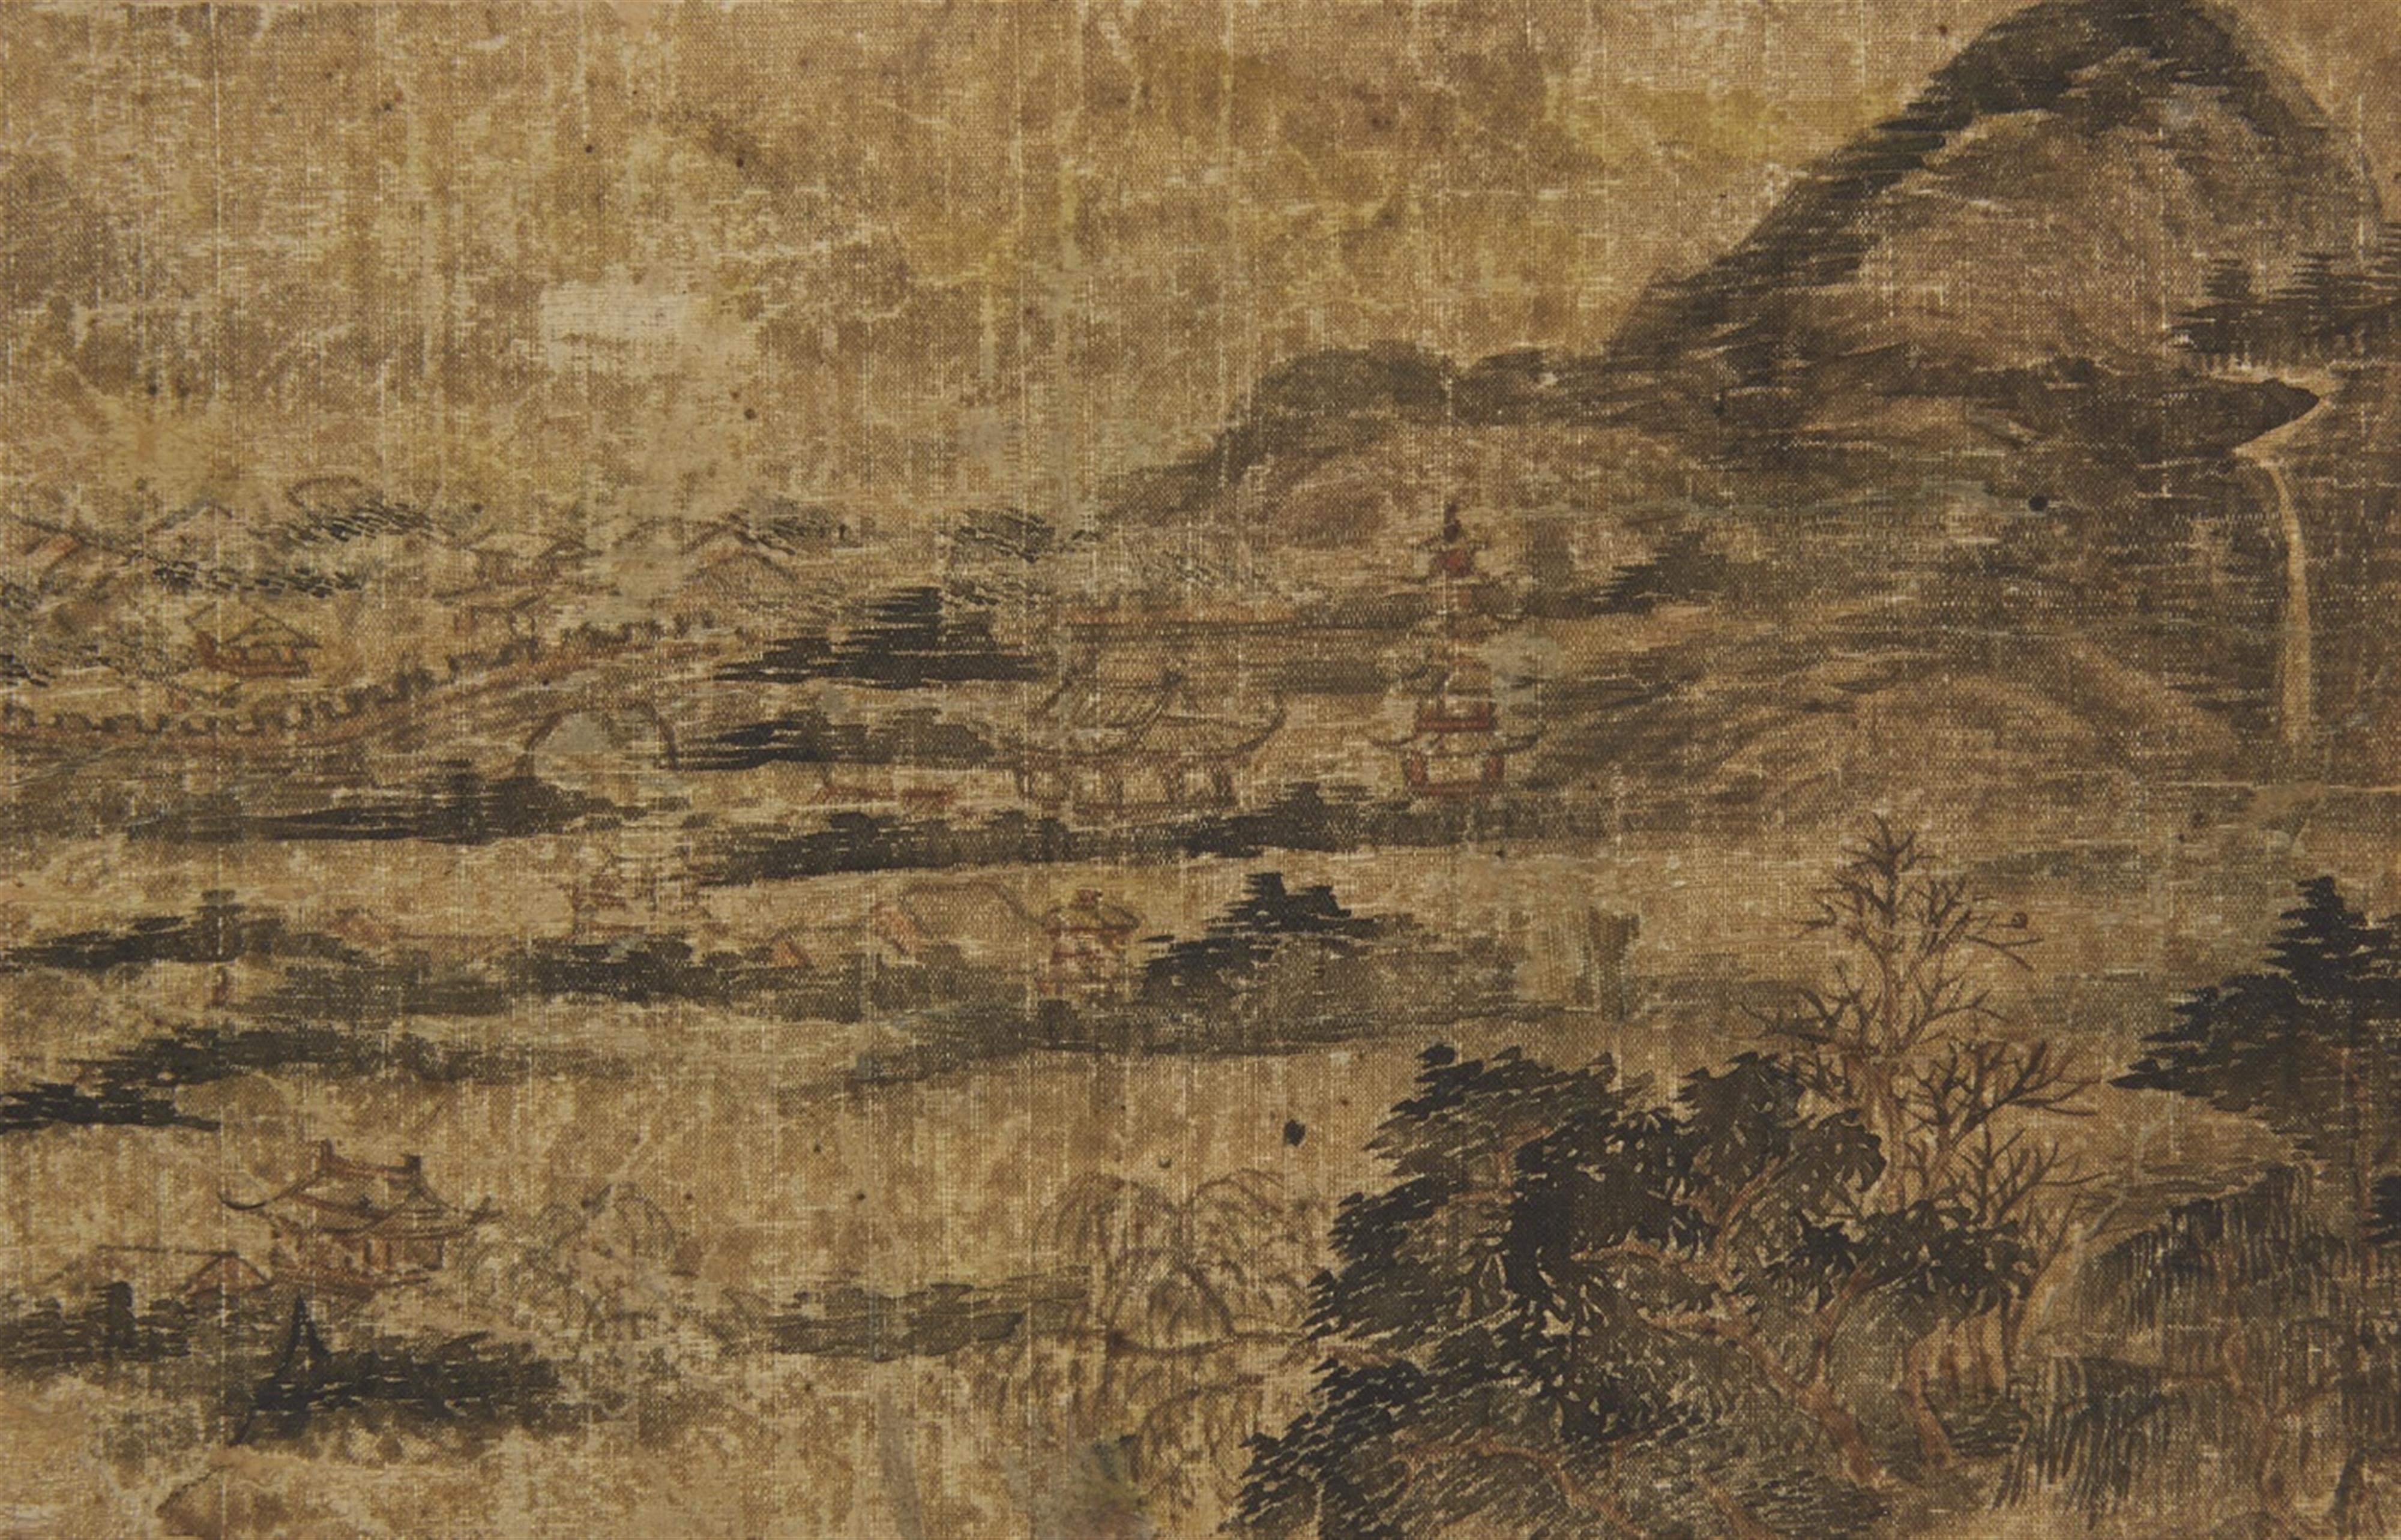 Qian Gu, in der Art - Album mit dem Titel "Ming Qian Gu shanshui ce", bestehend aus sechs losen Doppelseiten mit Landschaftdarstellungen im Stil des Qian Gu (1508-1578). Wasserschäden. Stoff bespannt... - image-5